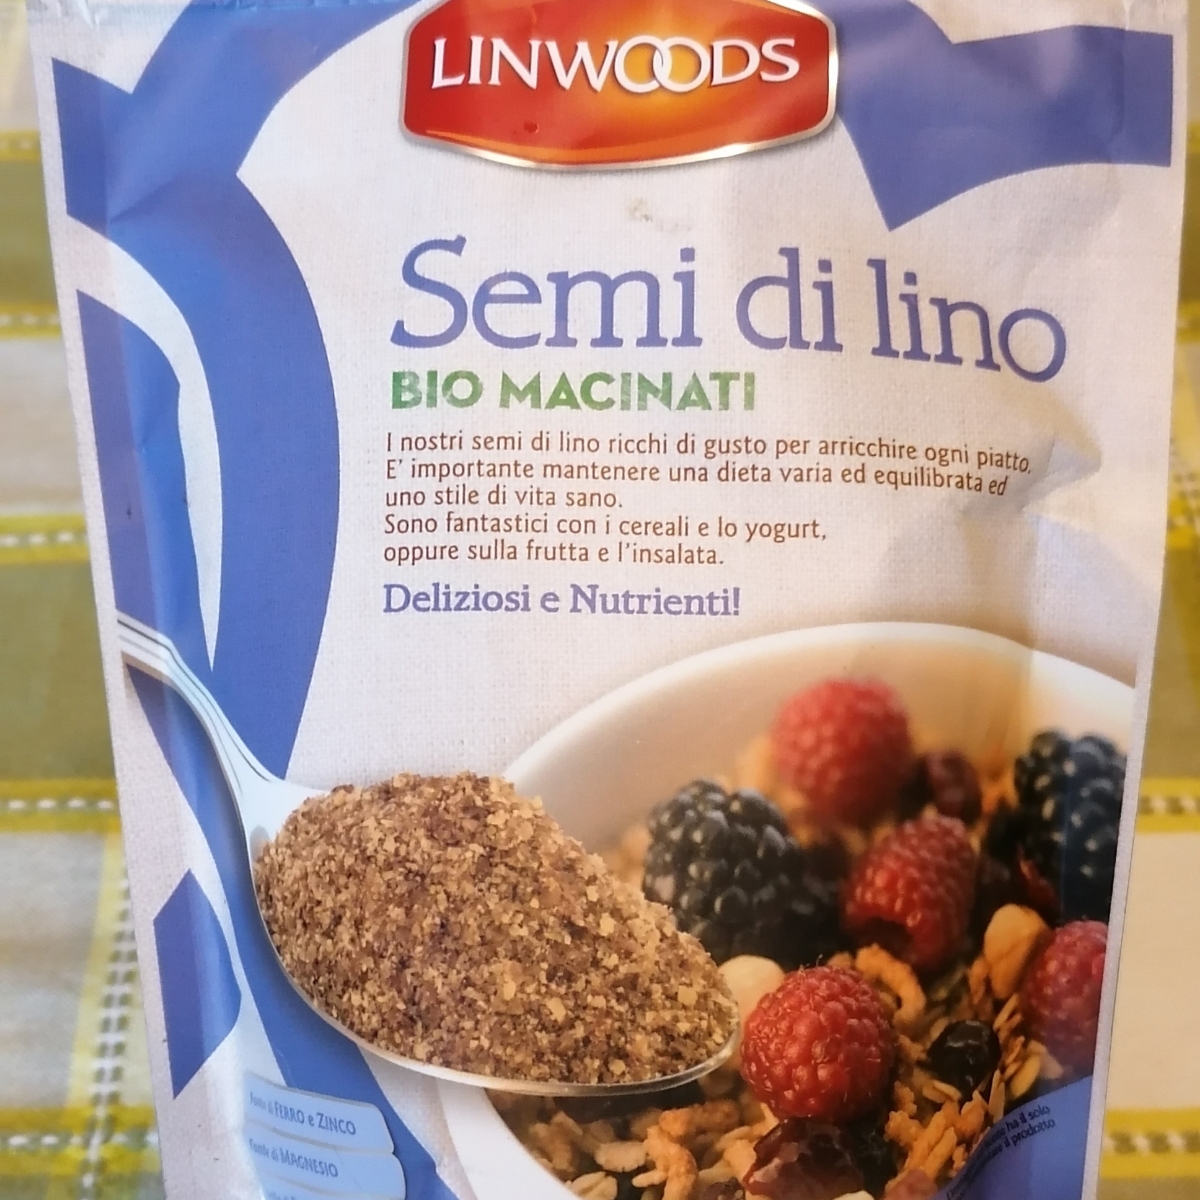 Linwoods Semi Di lino Bio macinati Review